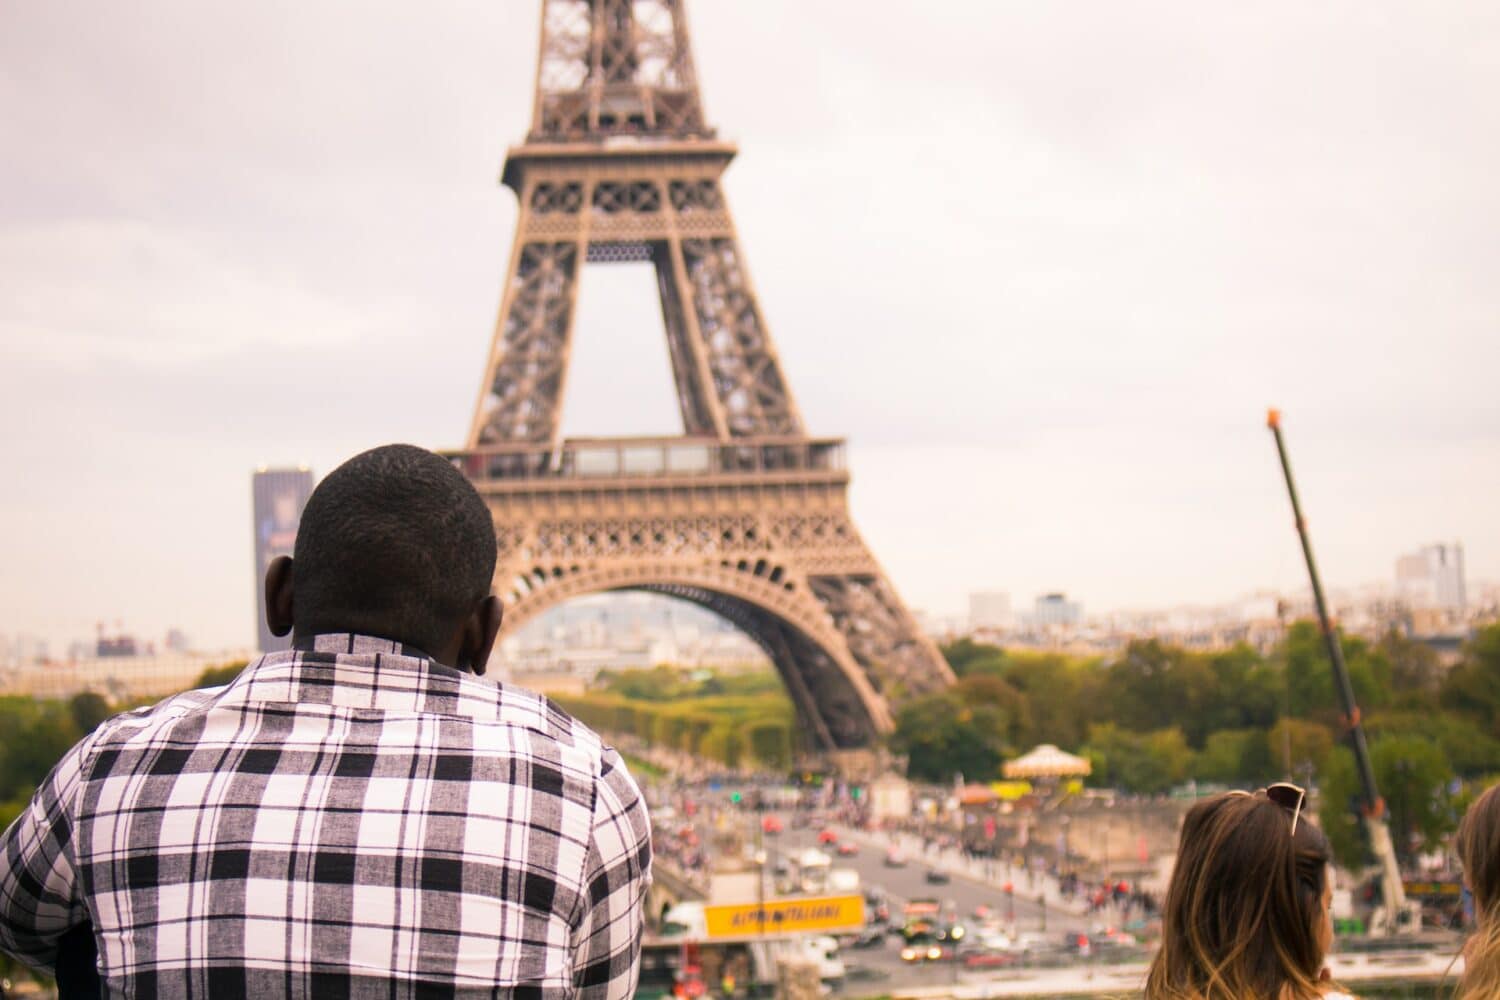 Homem negro de costas para a foto olhando a Torre Eiffel logo em frente. Ele usa uma camisa xadres e está num lugar alto. Ao seu lado, duas meninas de cabelos claros conversam entre si. É possível ver carros passando na rua abaixo. Essa foto ilustra o post sobre o melhor seguro viagem Europa. - Foto: orva studio via Unsplash